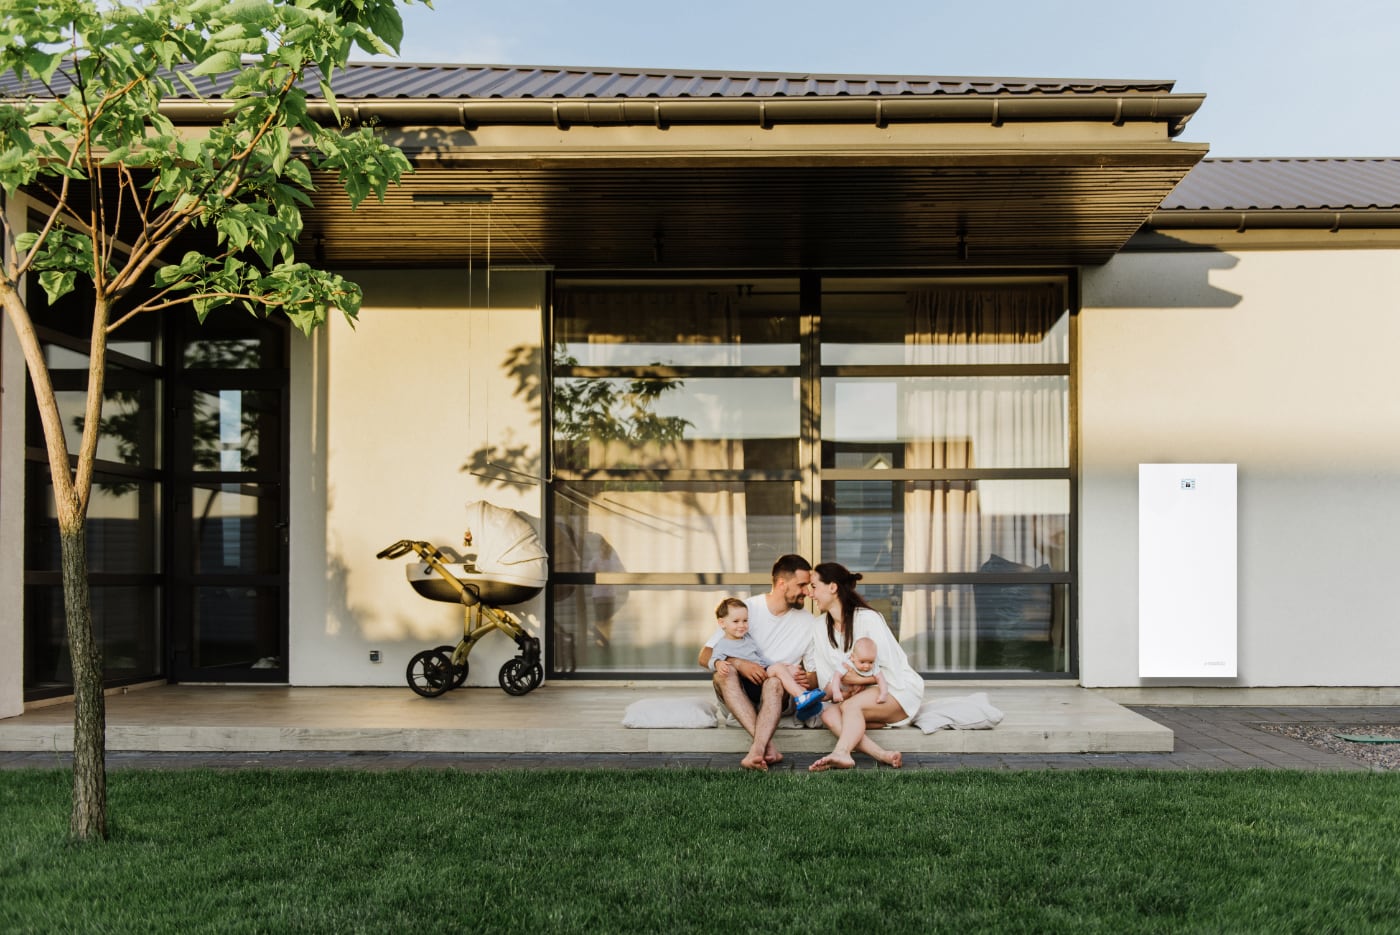 Familj som sitter på en terass, framför en villa med solceller och energisystem från emaldo